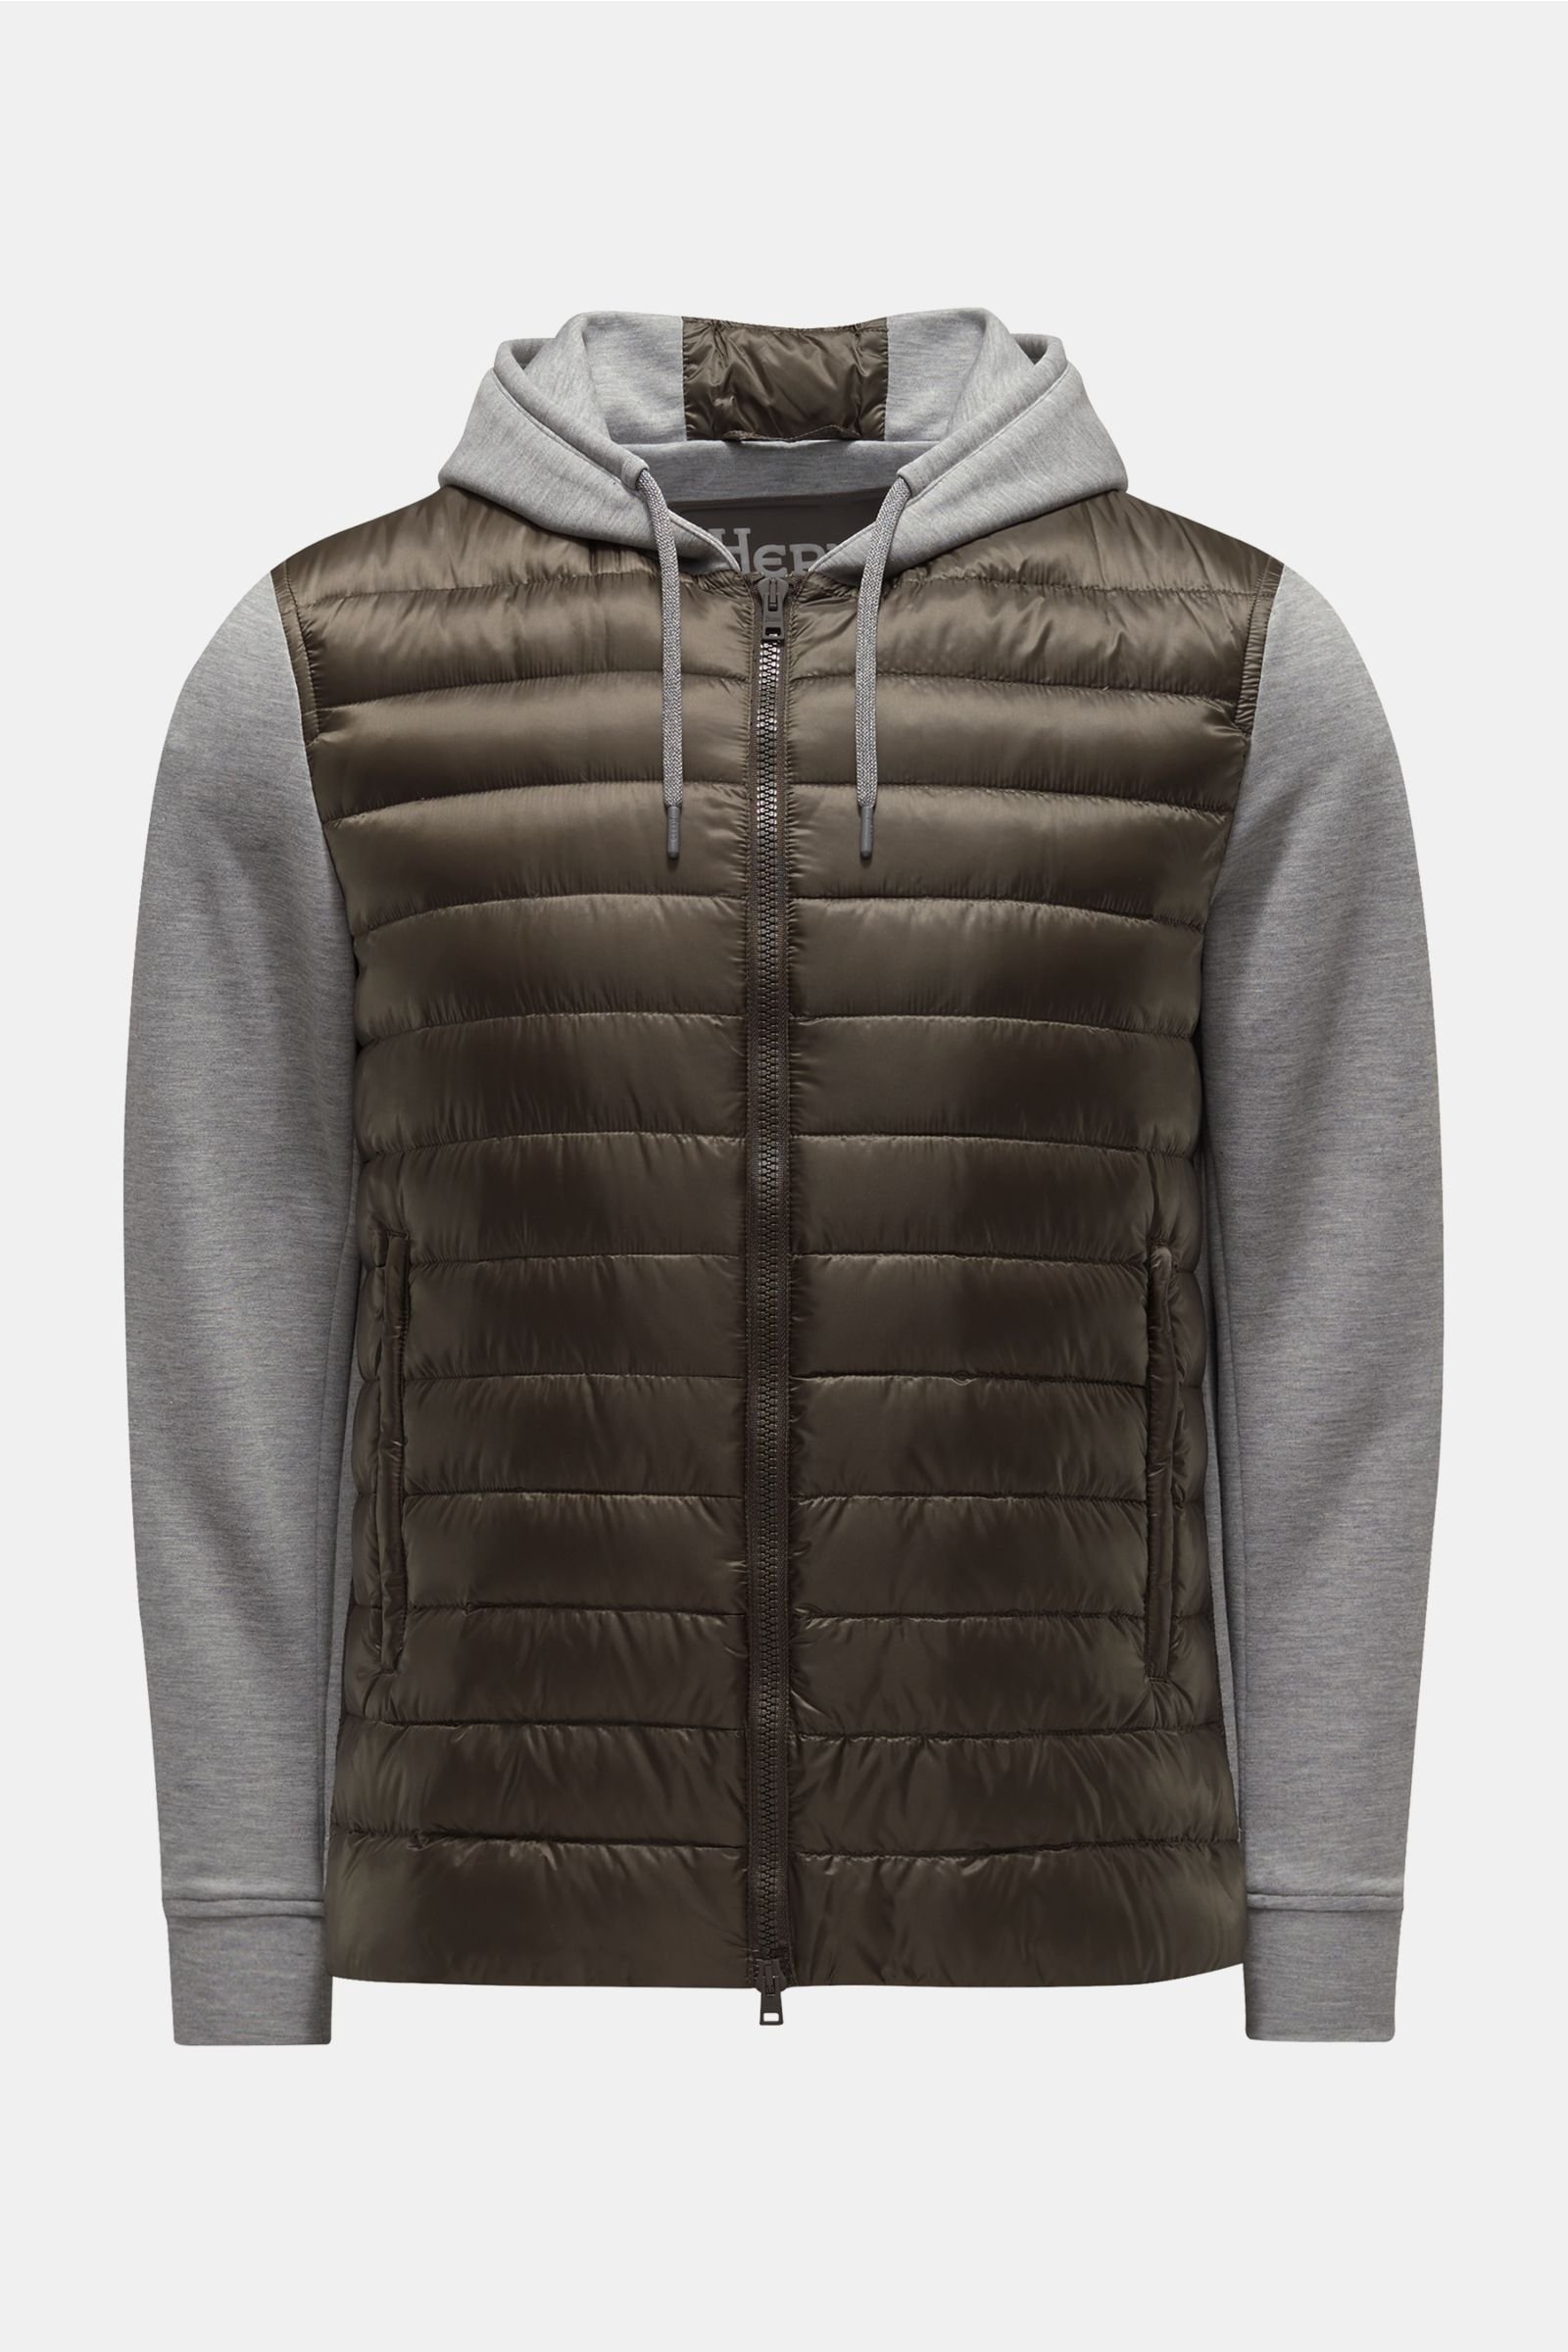 Sweat jacket olive/grey